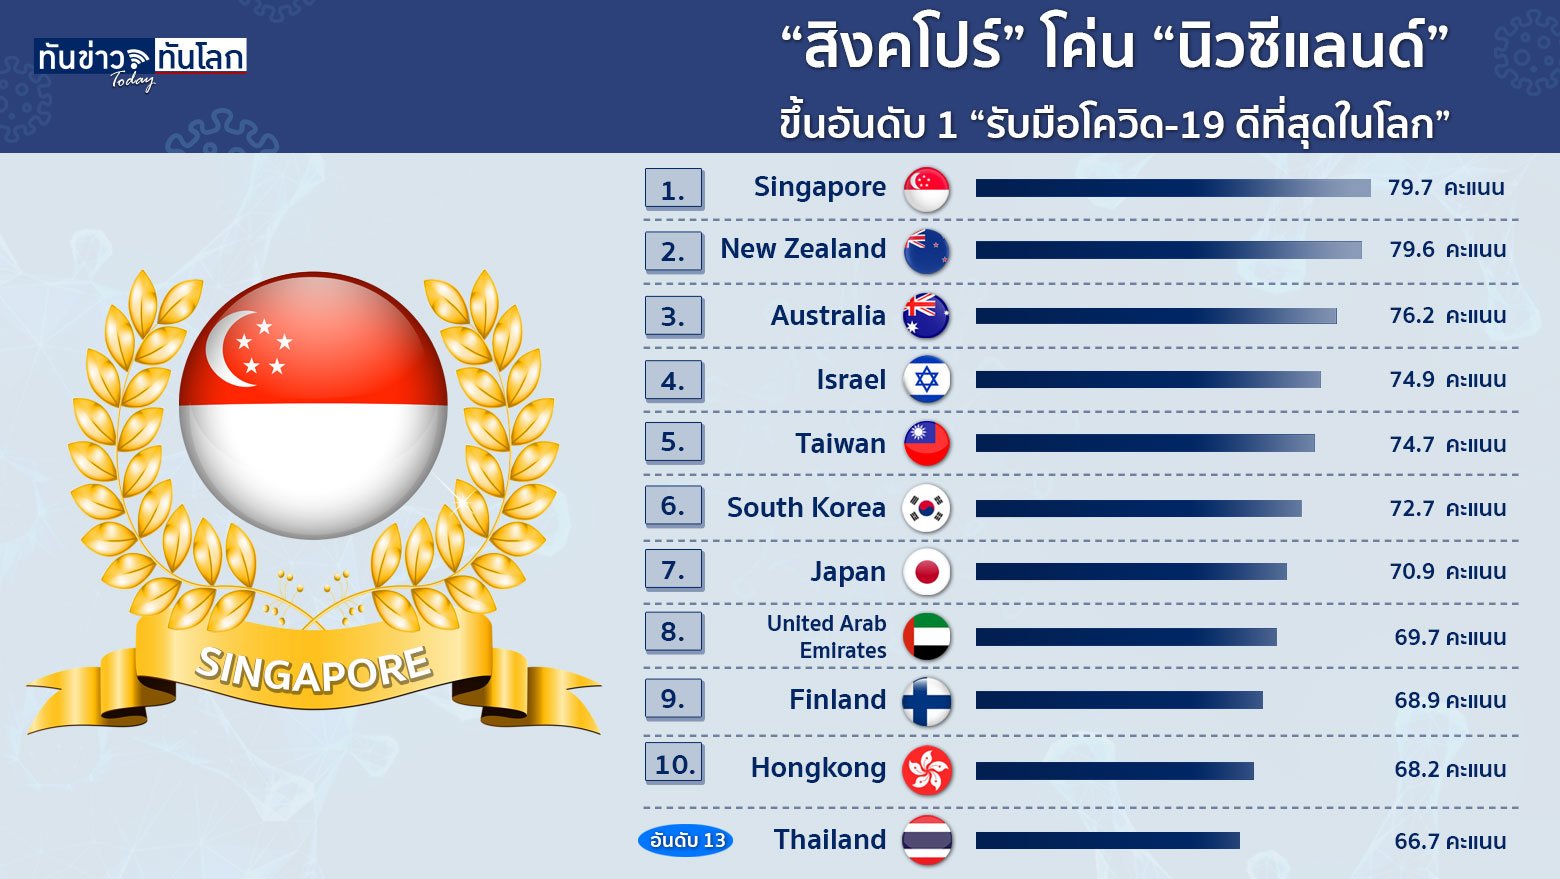  “สิงคโปร์” โค่น “นิวซีแลนด์” ขึ้นอันดับ 1 “รับมือโควิด-19 ดีที่สุดในโลก”